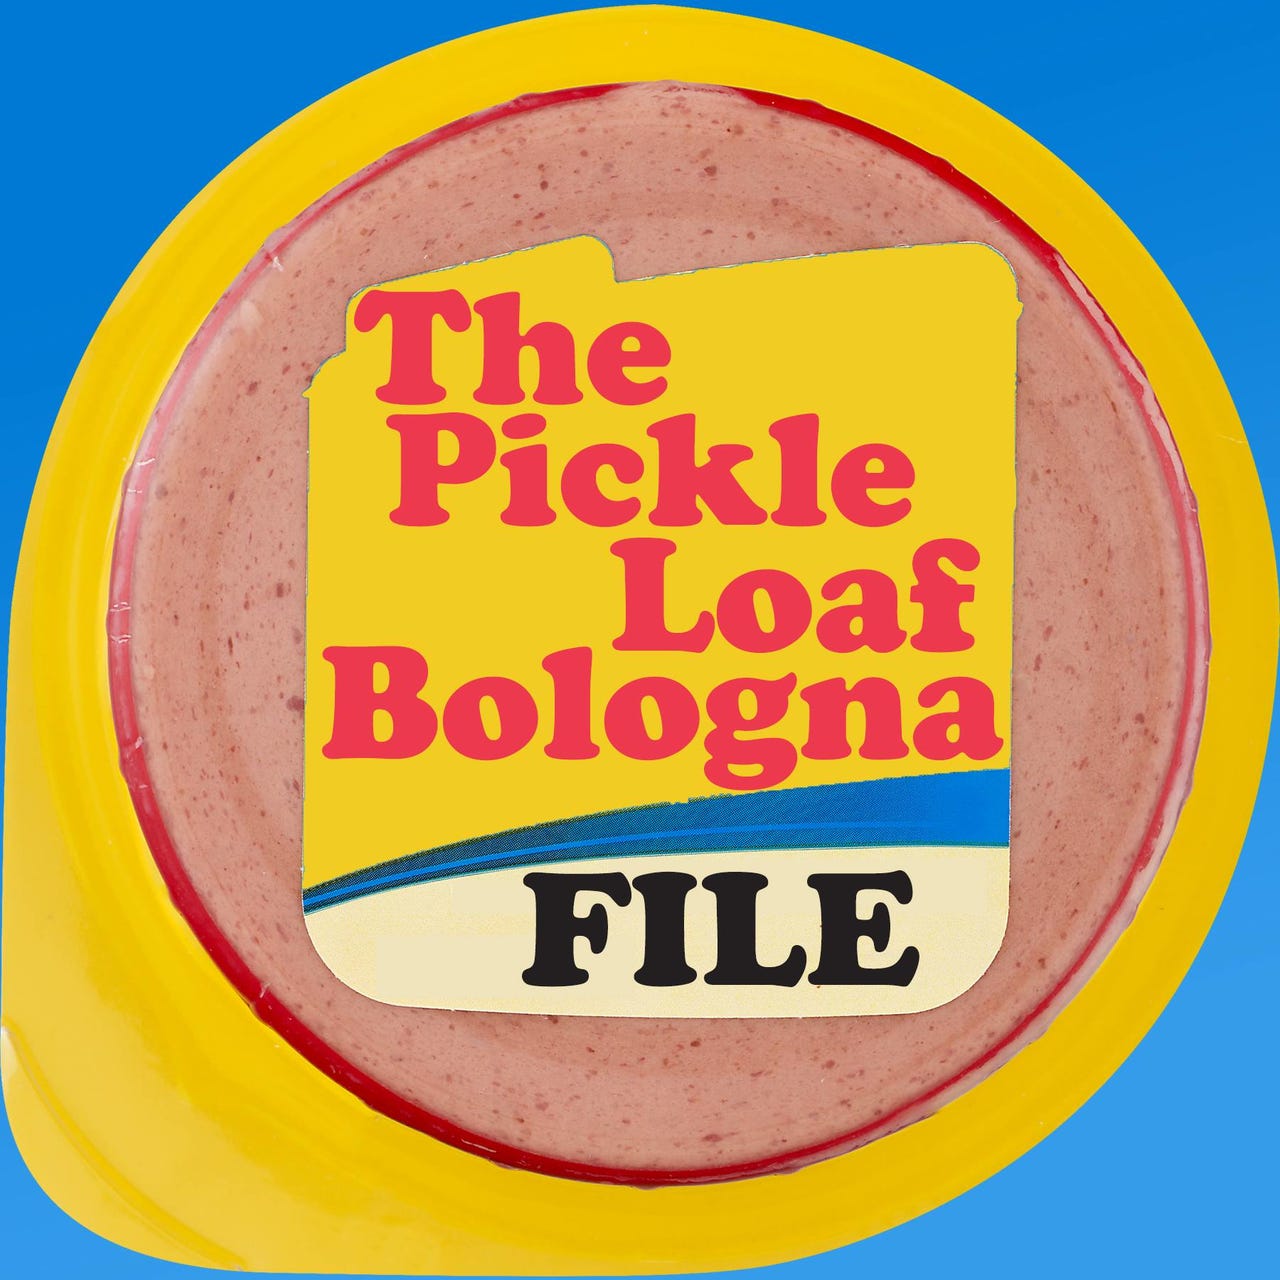 Artwork for The Pickle Loaf Bologna File